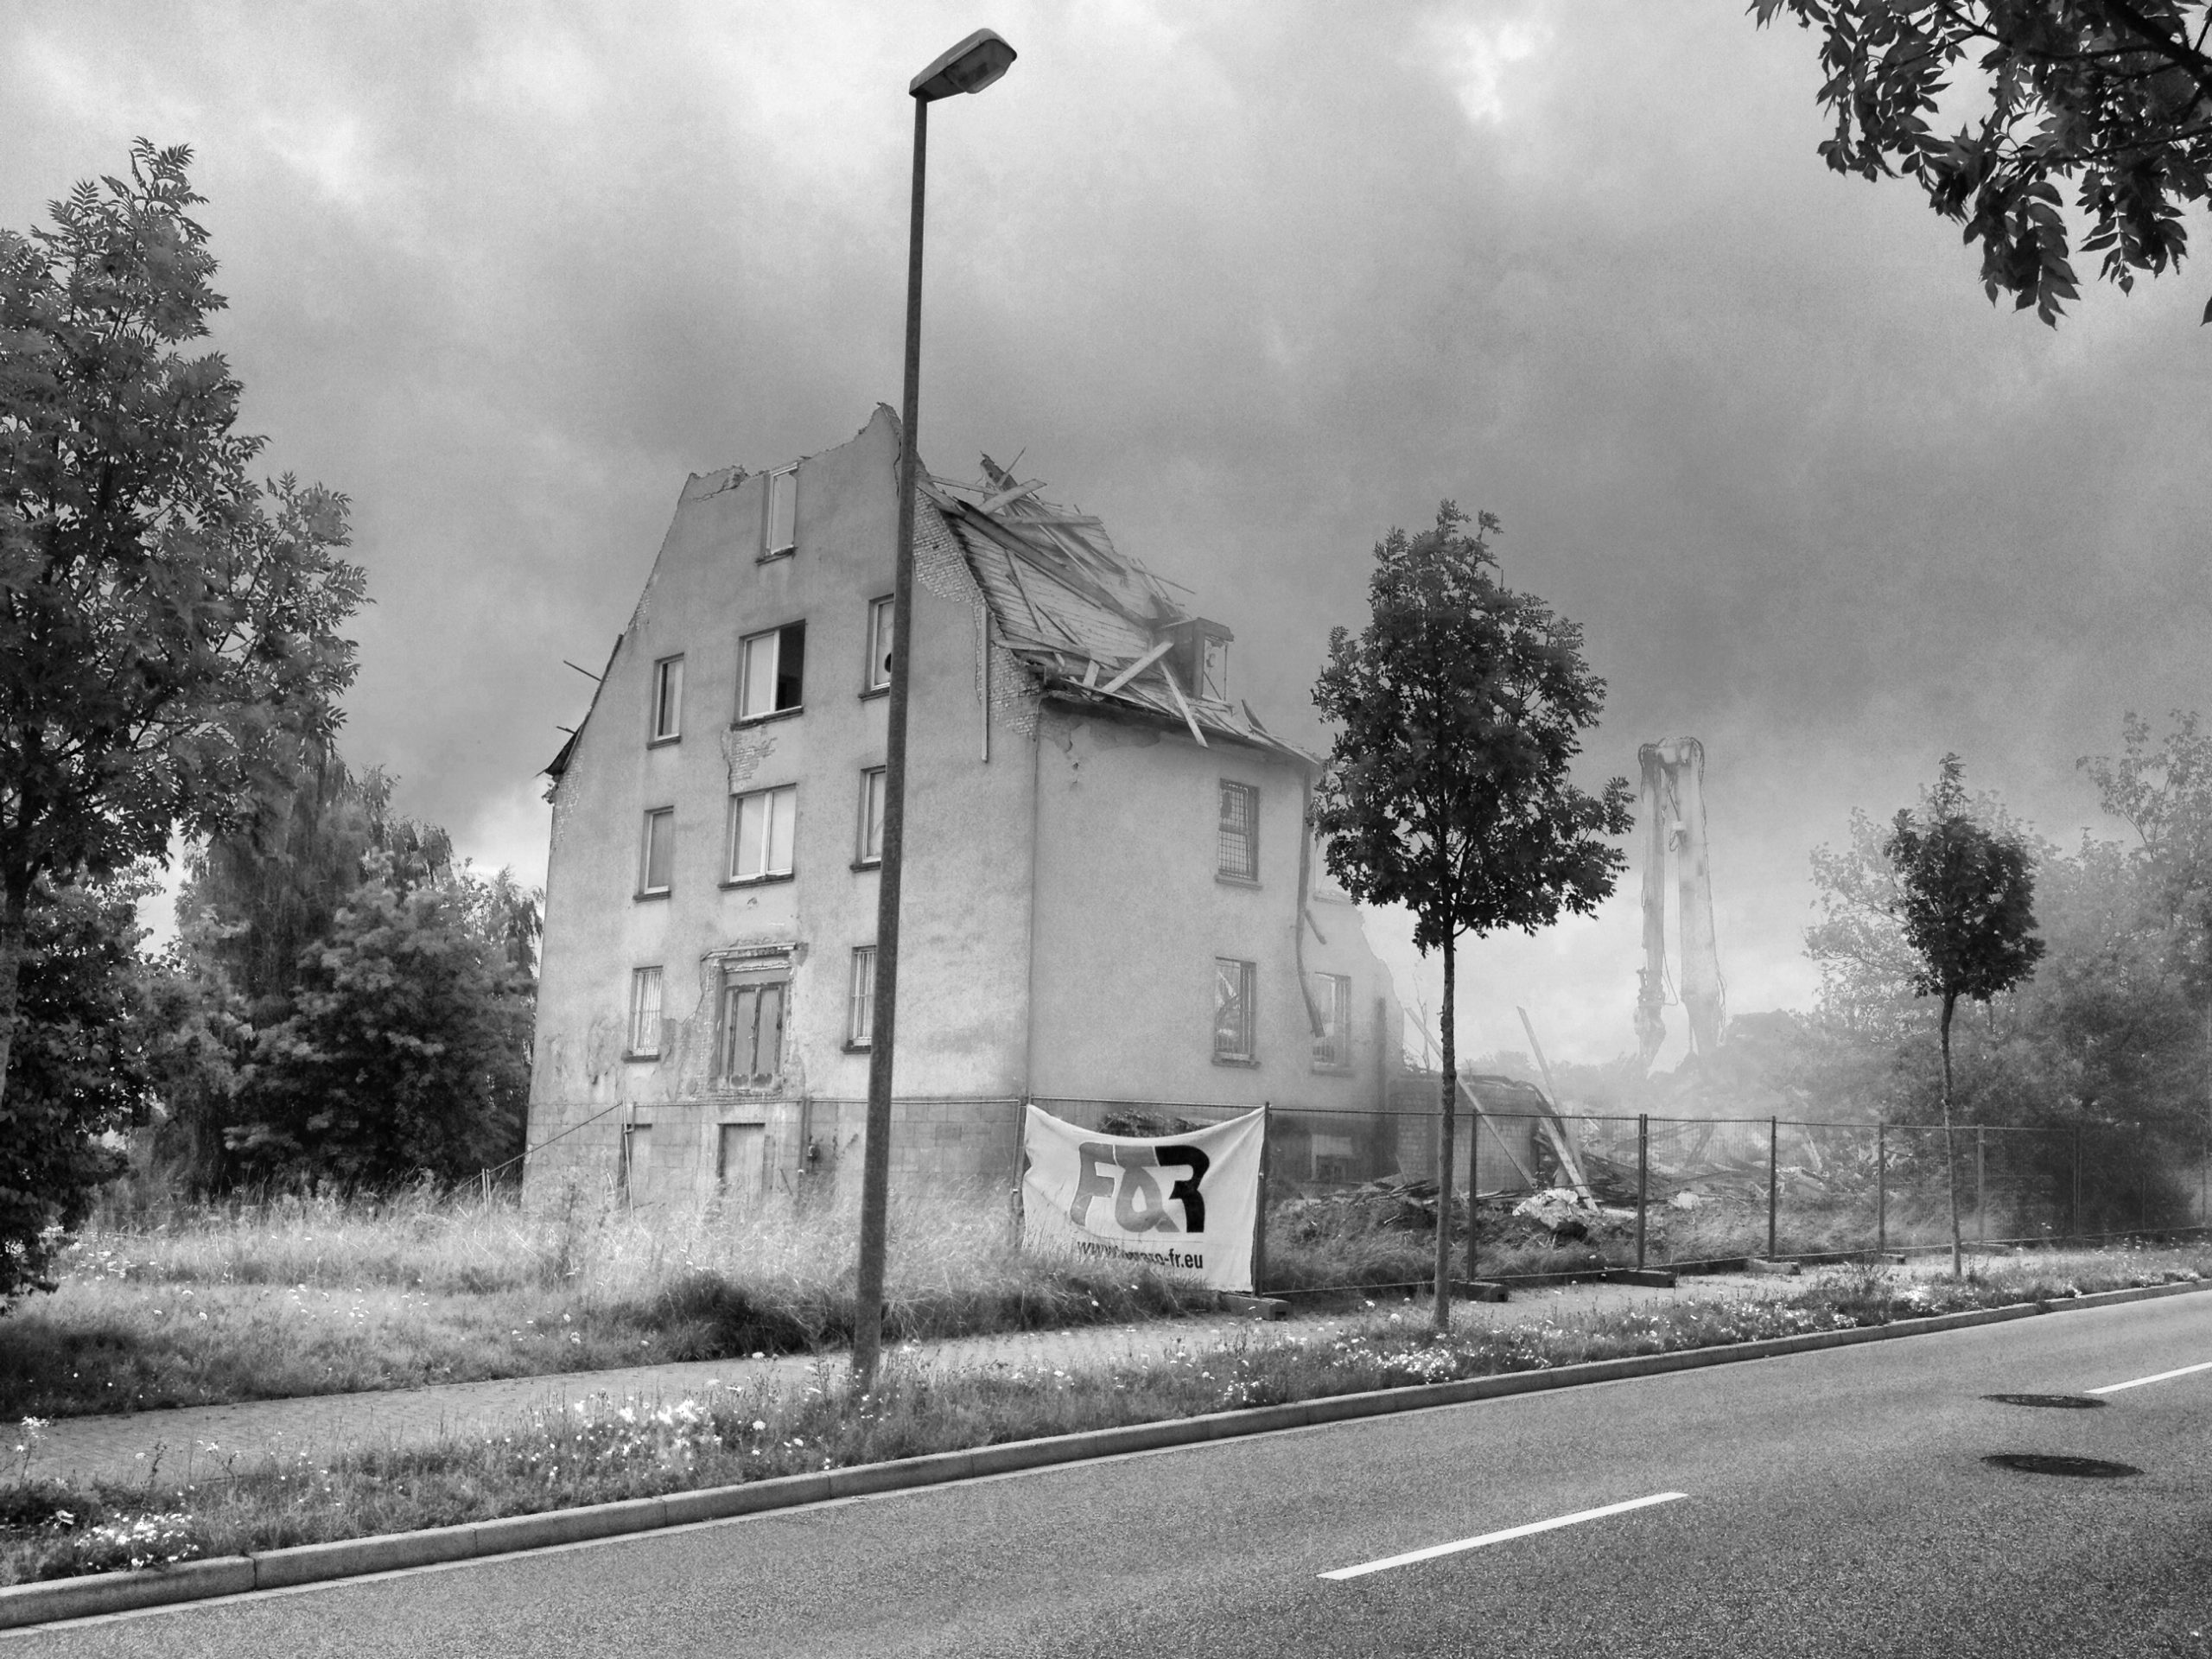 Schwarz-weiß Bild eines Gebäudeabrisses. Die Spitze eines Giebelbaus ist schon zerstört. Im Vordergrund steht eine Straßenlaterne